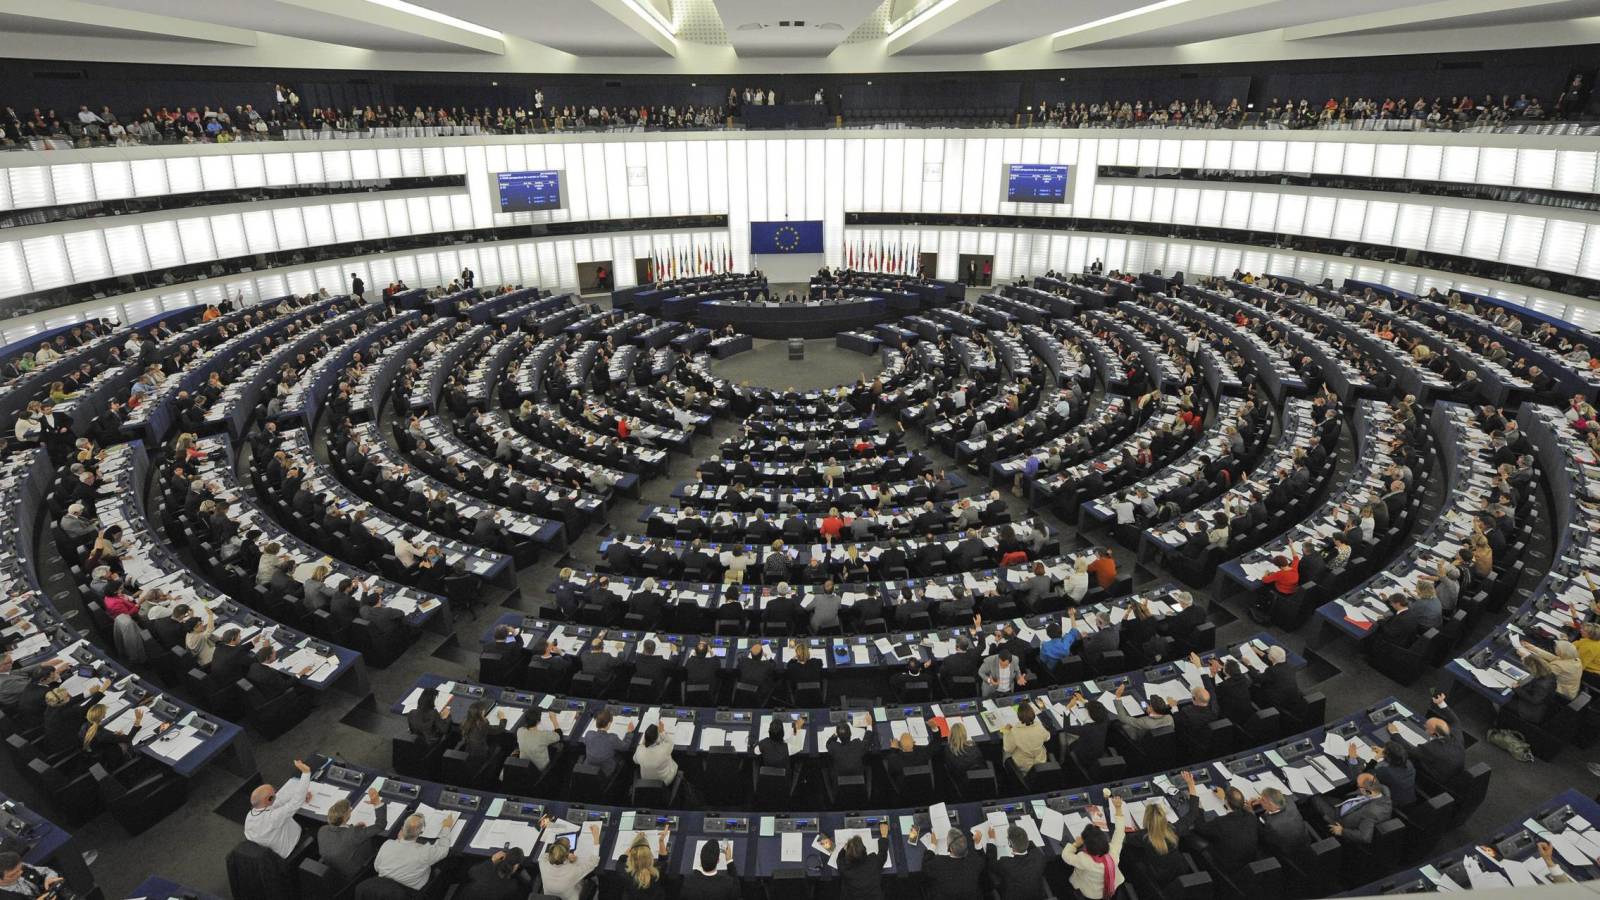 Las pymes son una de las prioridades del Parlamento Europeo de cara a 2019